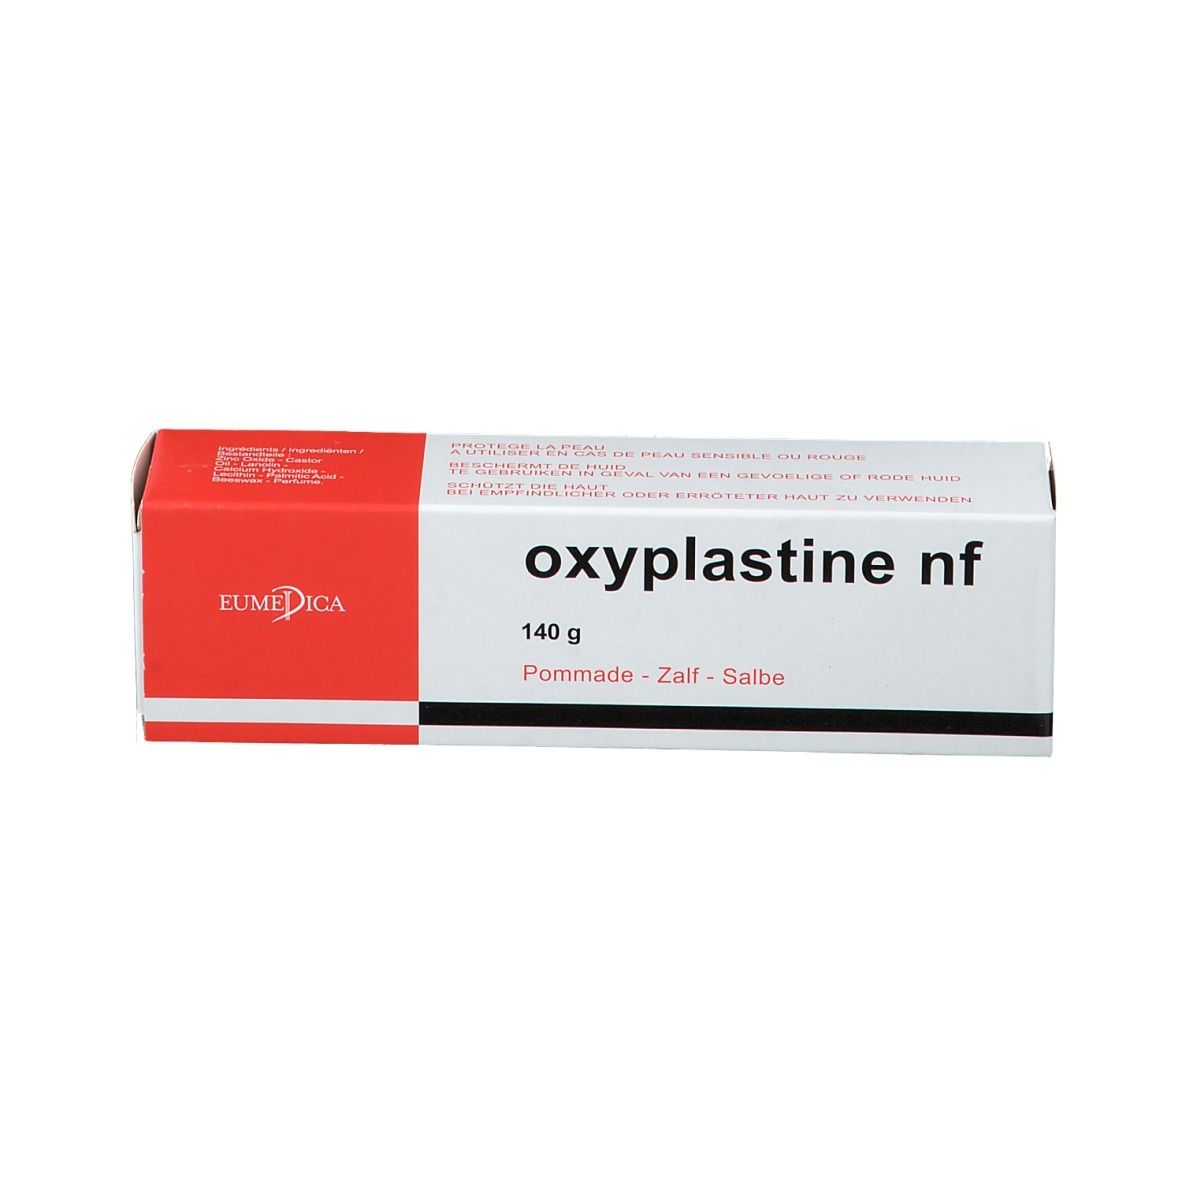 Oxyplastine 40 g - Vente en ligne!